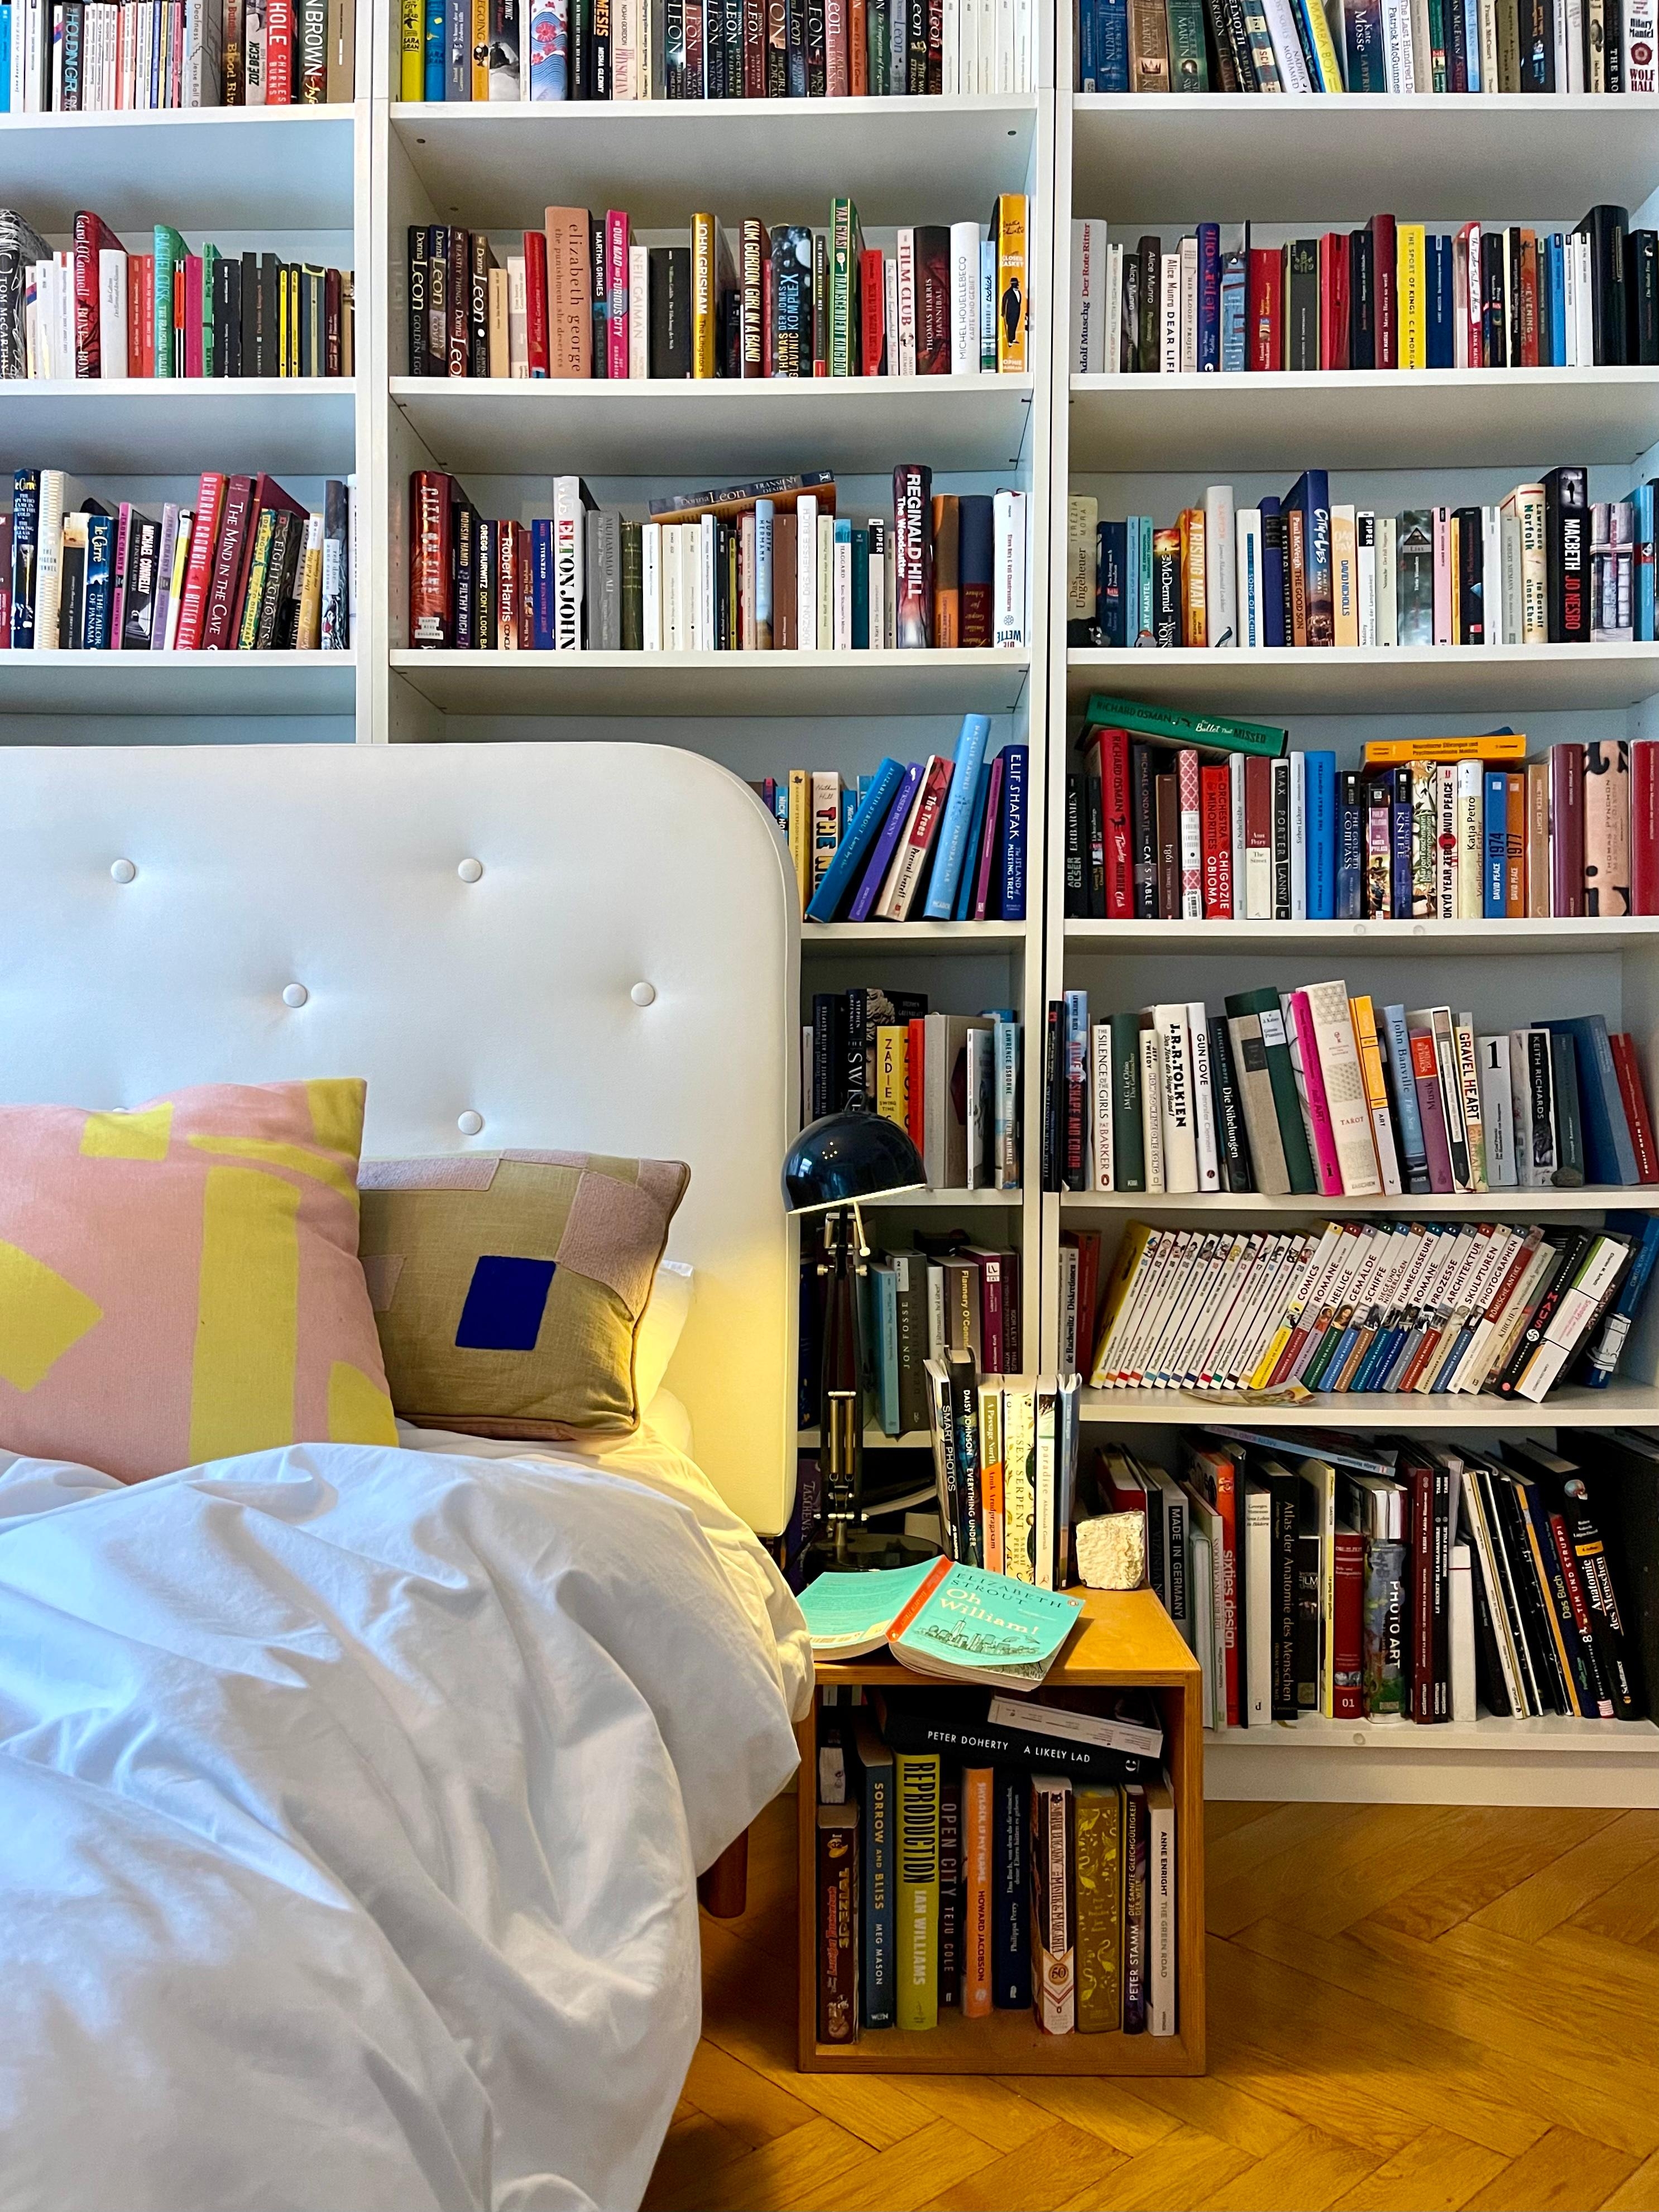 Buchverliebt.

#shelfie #schlafzimmer #altbau #bücherliebe #zuhause